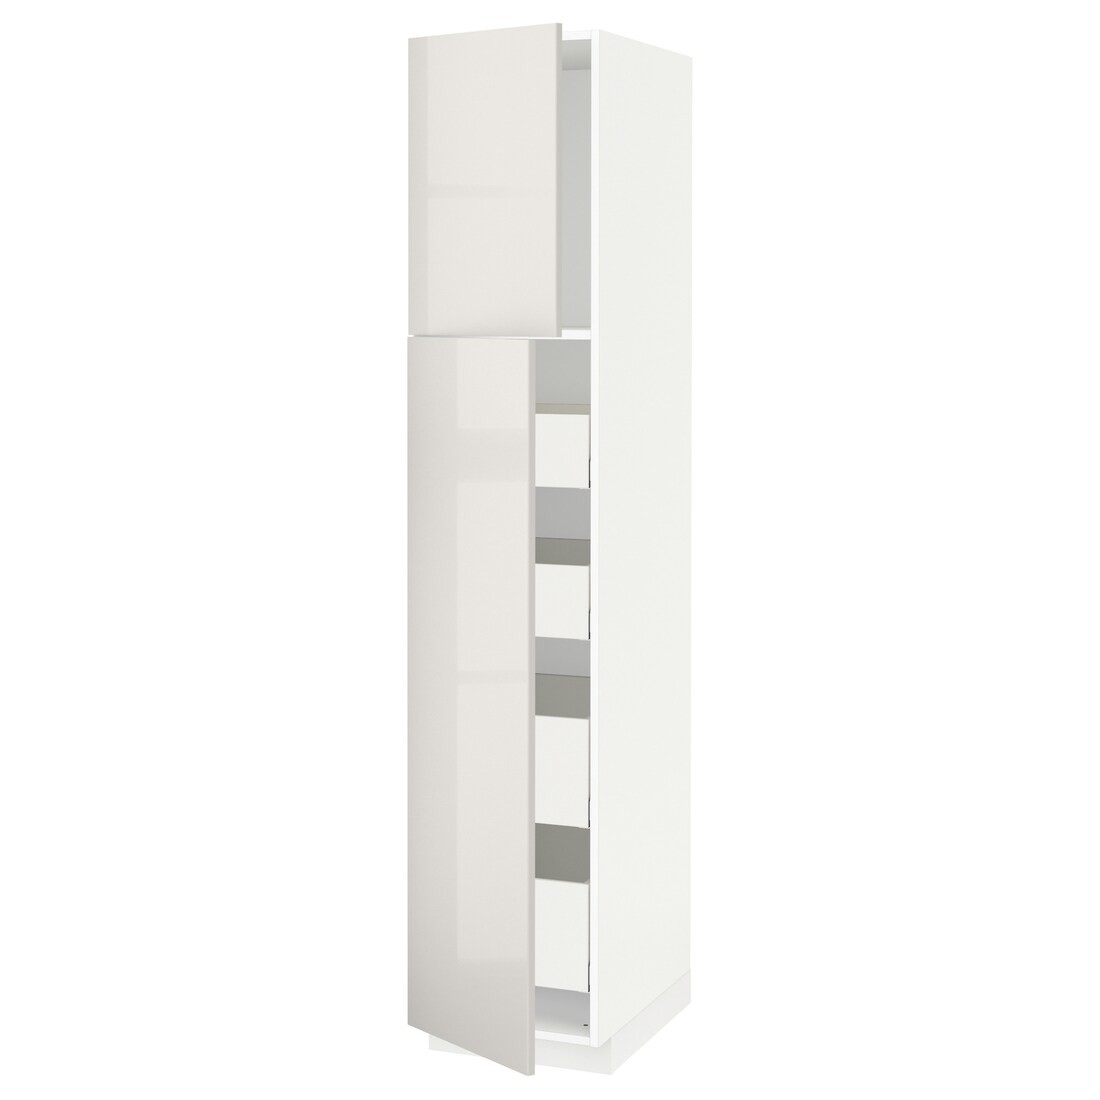 IKEA METOD МЕТОД / MAXIMERA МАКСИМЕРА Шкаф высокий 2 двери / 4 ящика, белый / Ringhult светло-серый, 40x60x200 см 19468875 | 194.688.75